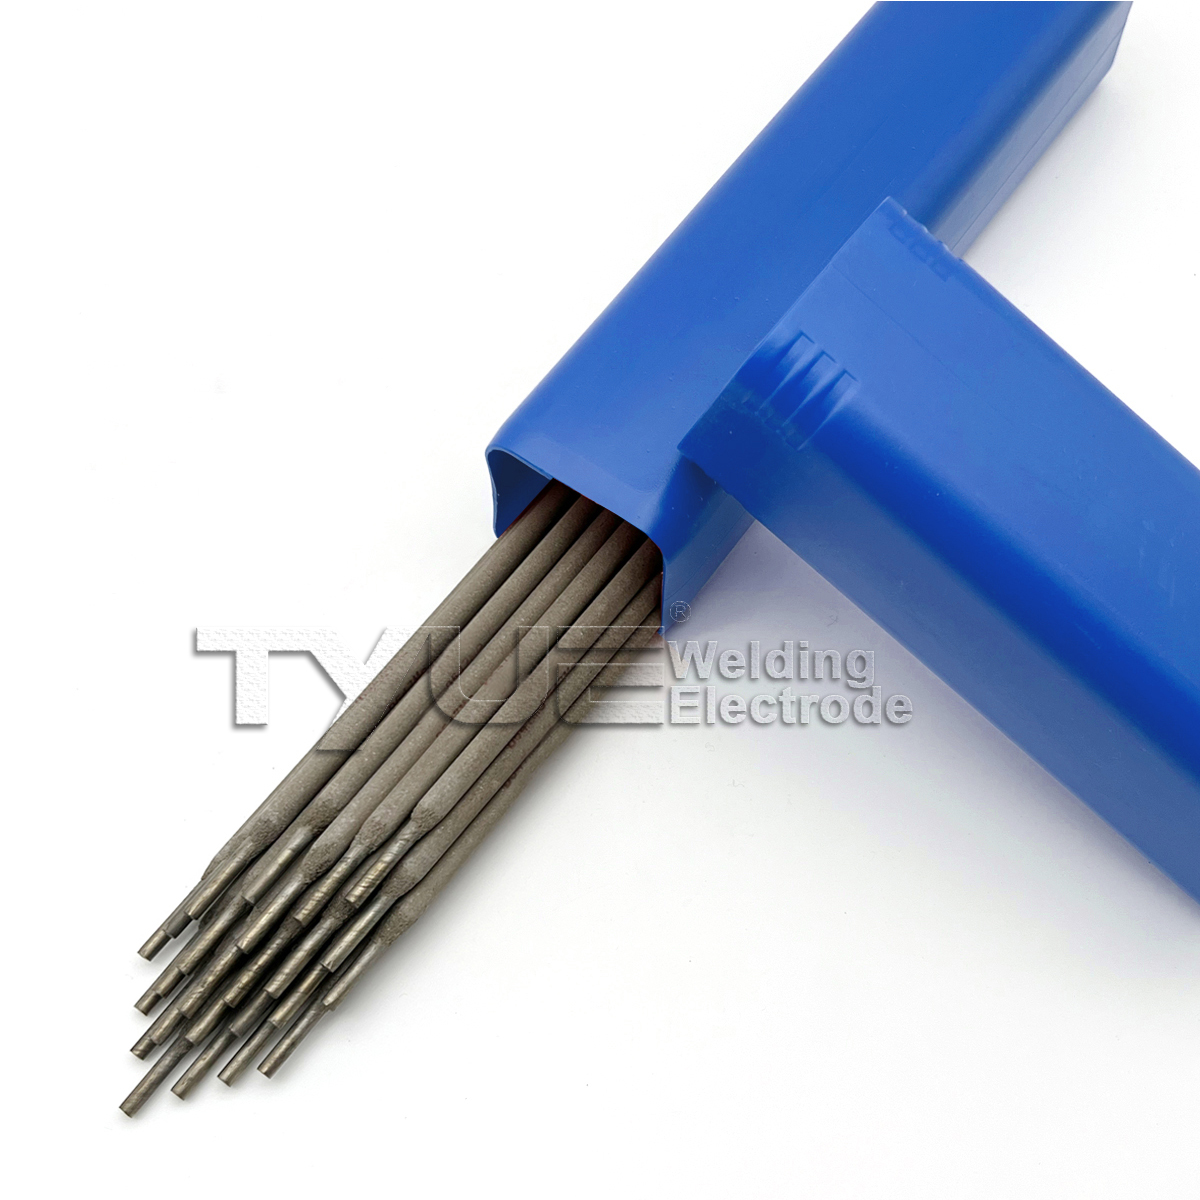 Hardfacing Welding Electrode DIN 8555 (E10-UM-65-GRZ) Surface Welding Rod Type No.: TY-C LEDURIT 67 Arc Welding Stick Gambar Unggulan